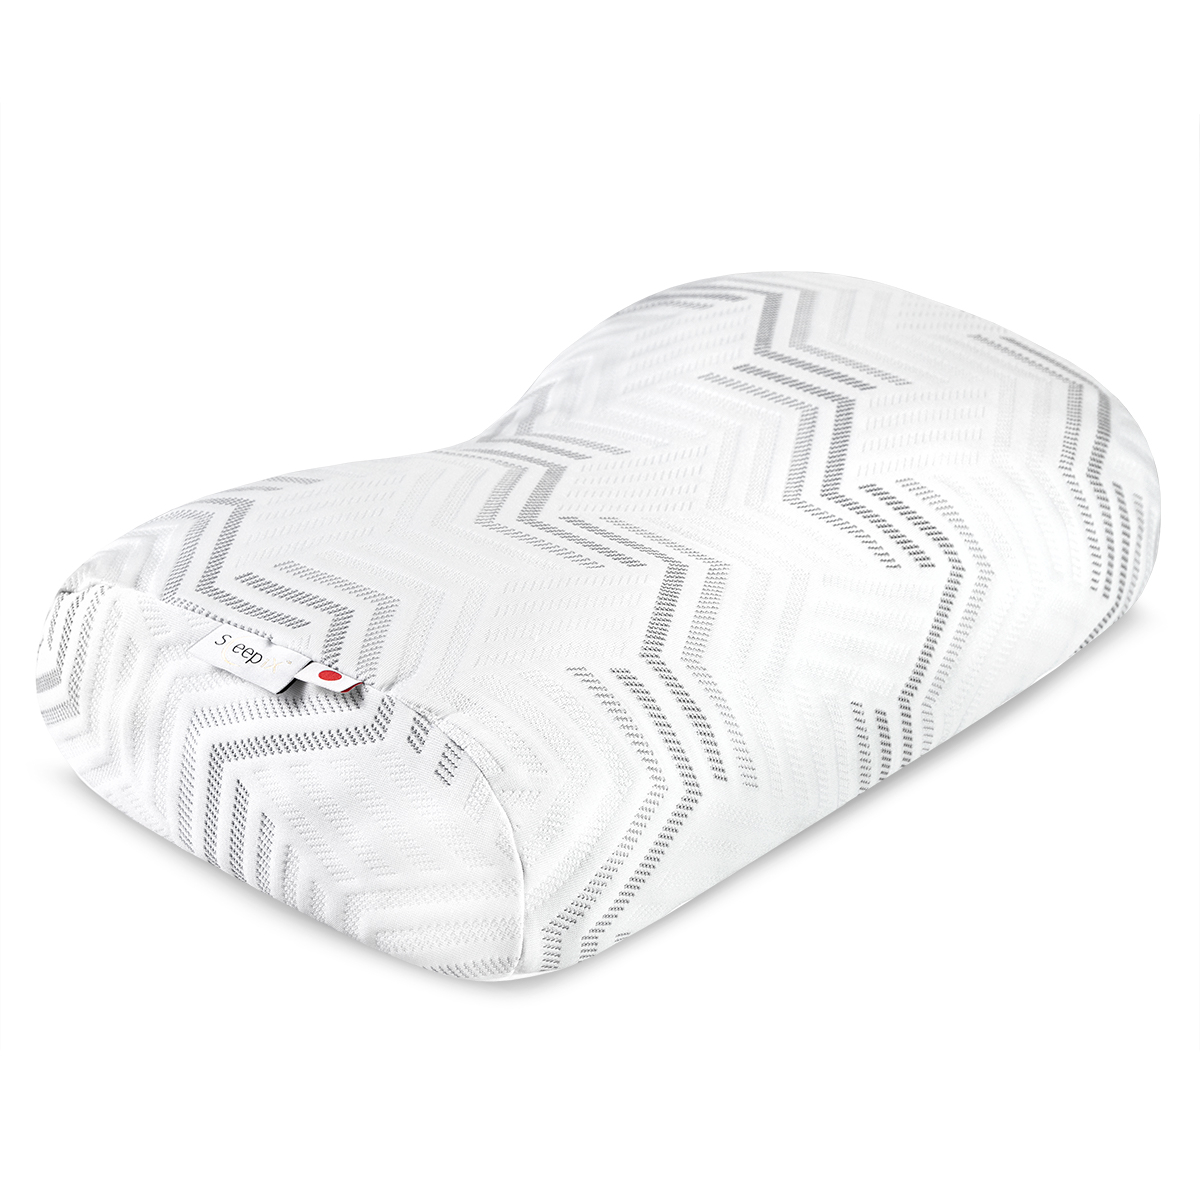 Анатомическая подушка Sleepix Миоко белая 57х35х9,5 см, цвет белый